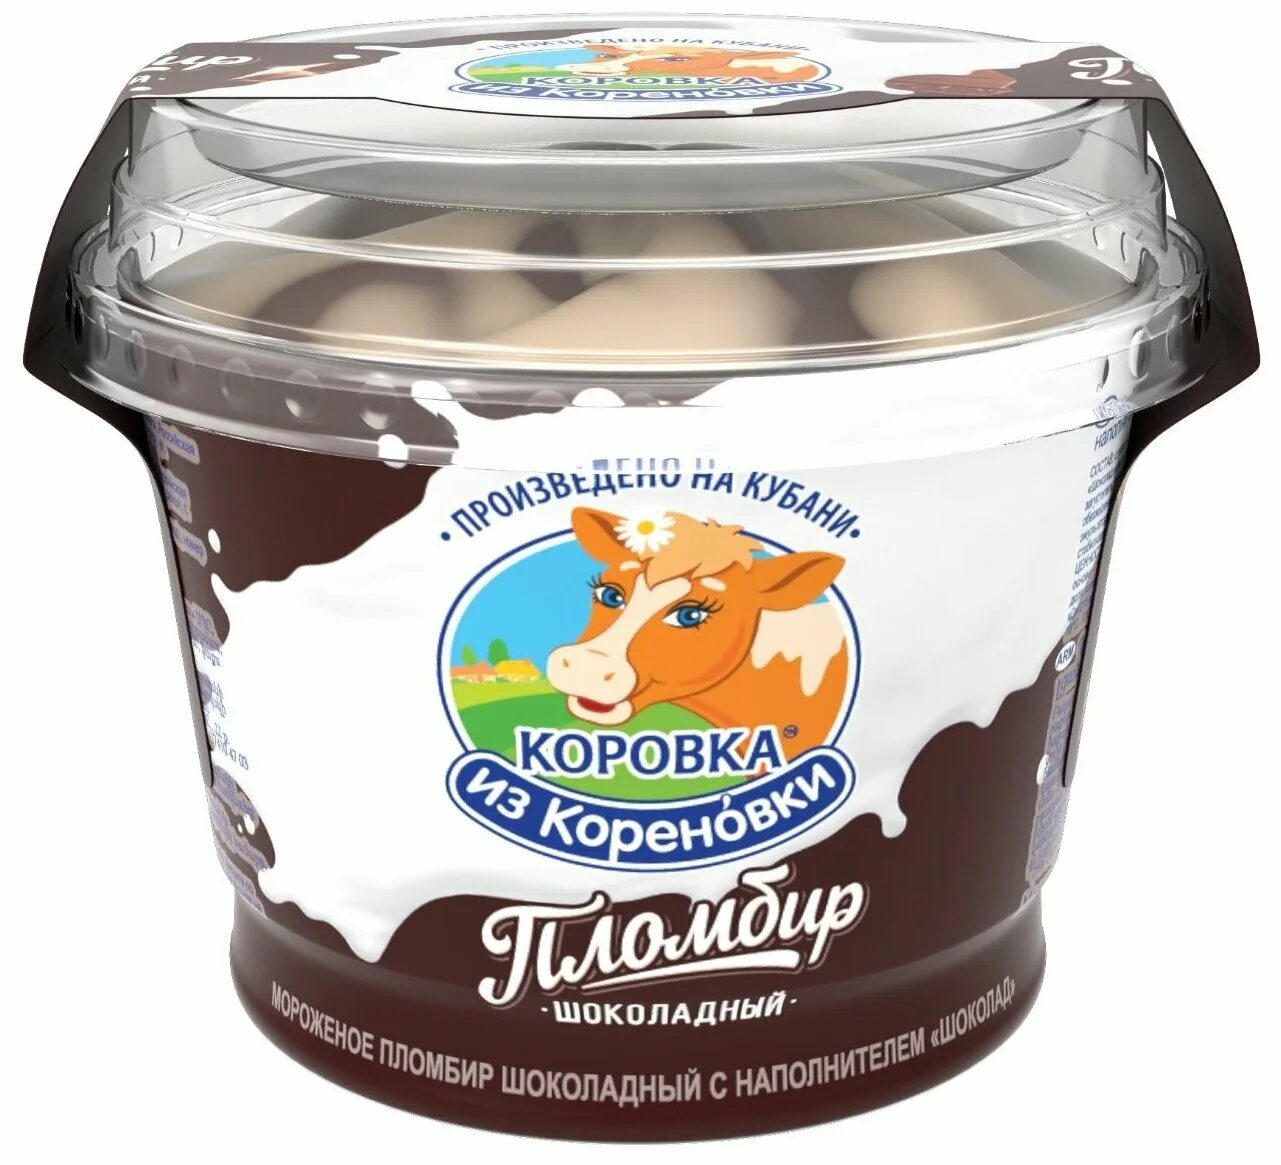 Коровка из Кореновки 400гр. Мороженое коровка из Кореновки 400 гр. Пломбир шоколадный коровка. Коровка из Кореновки эскимо шоколадное.